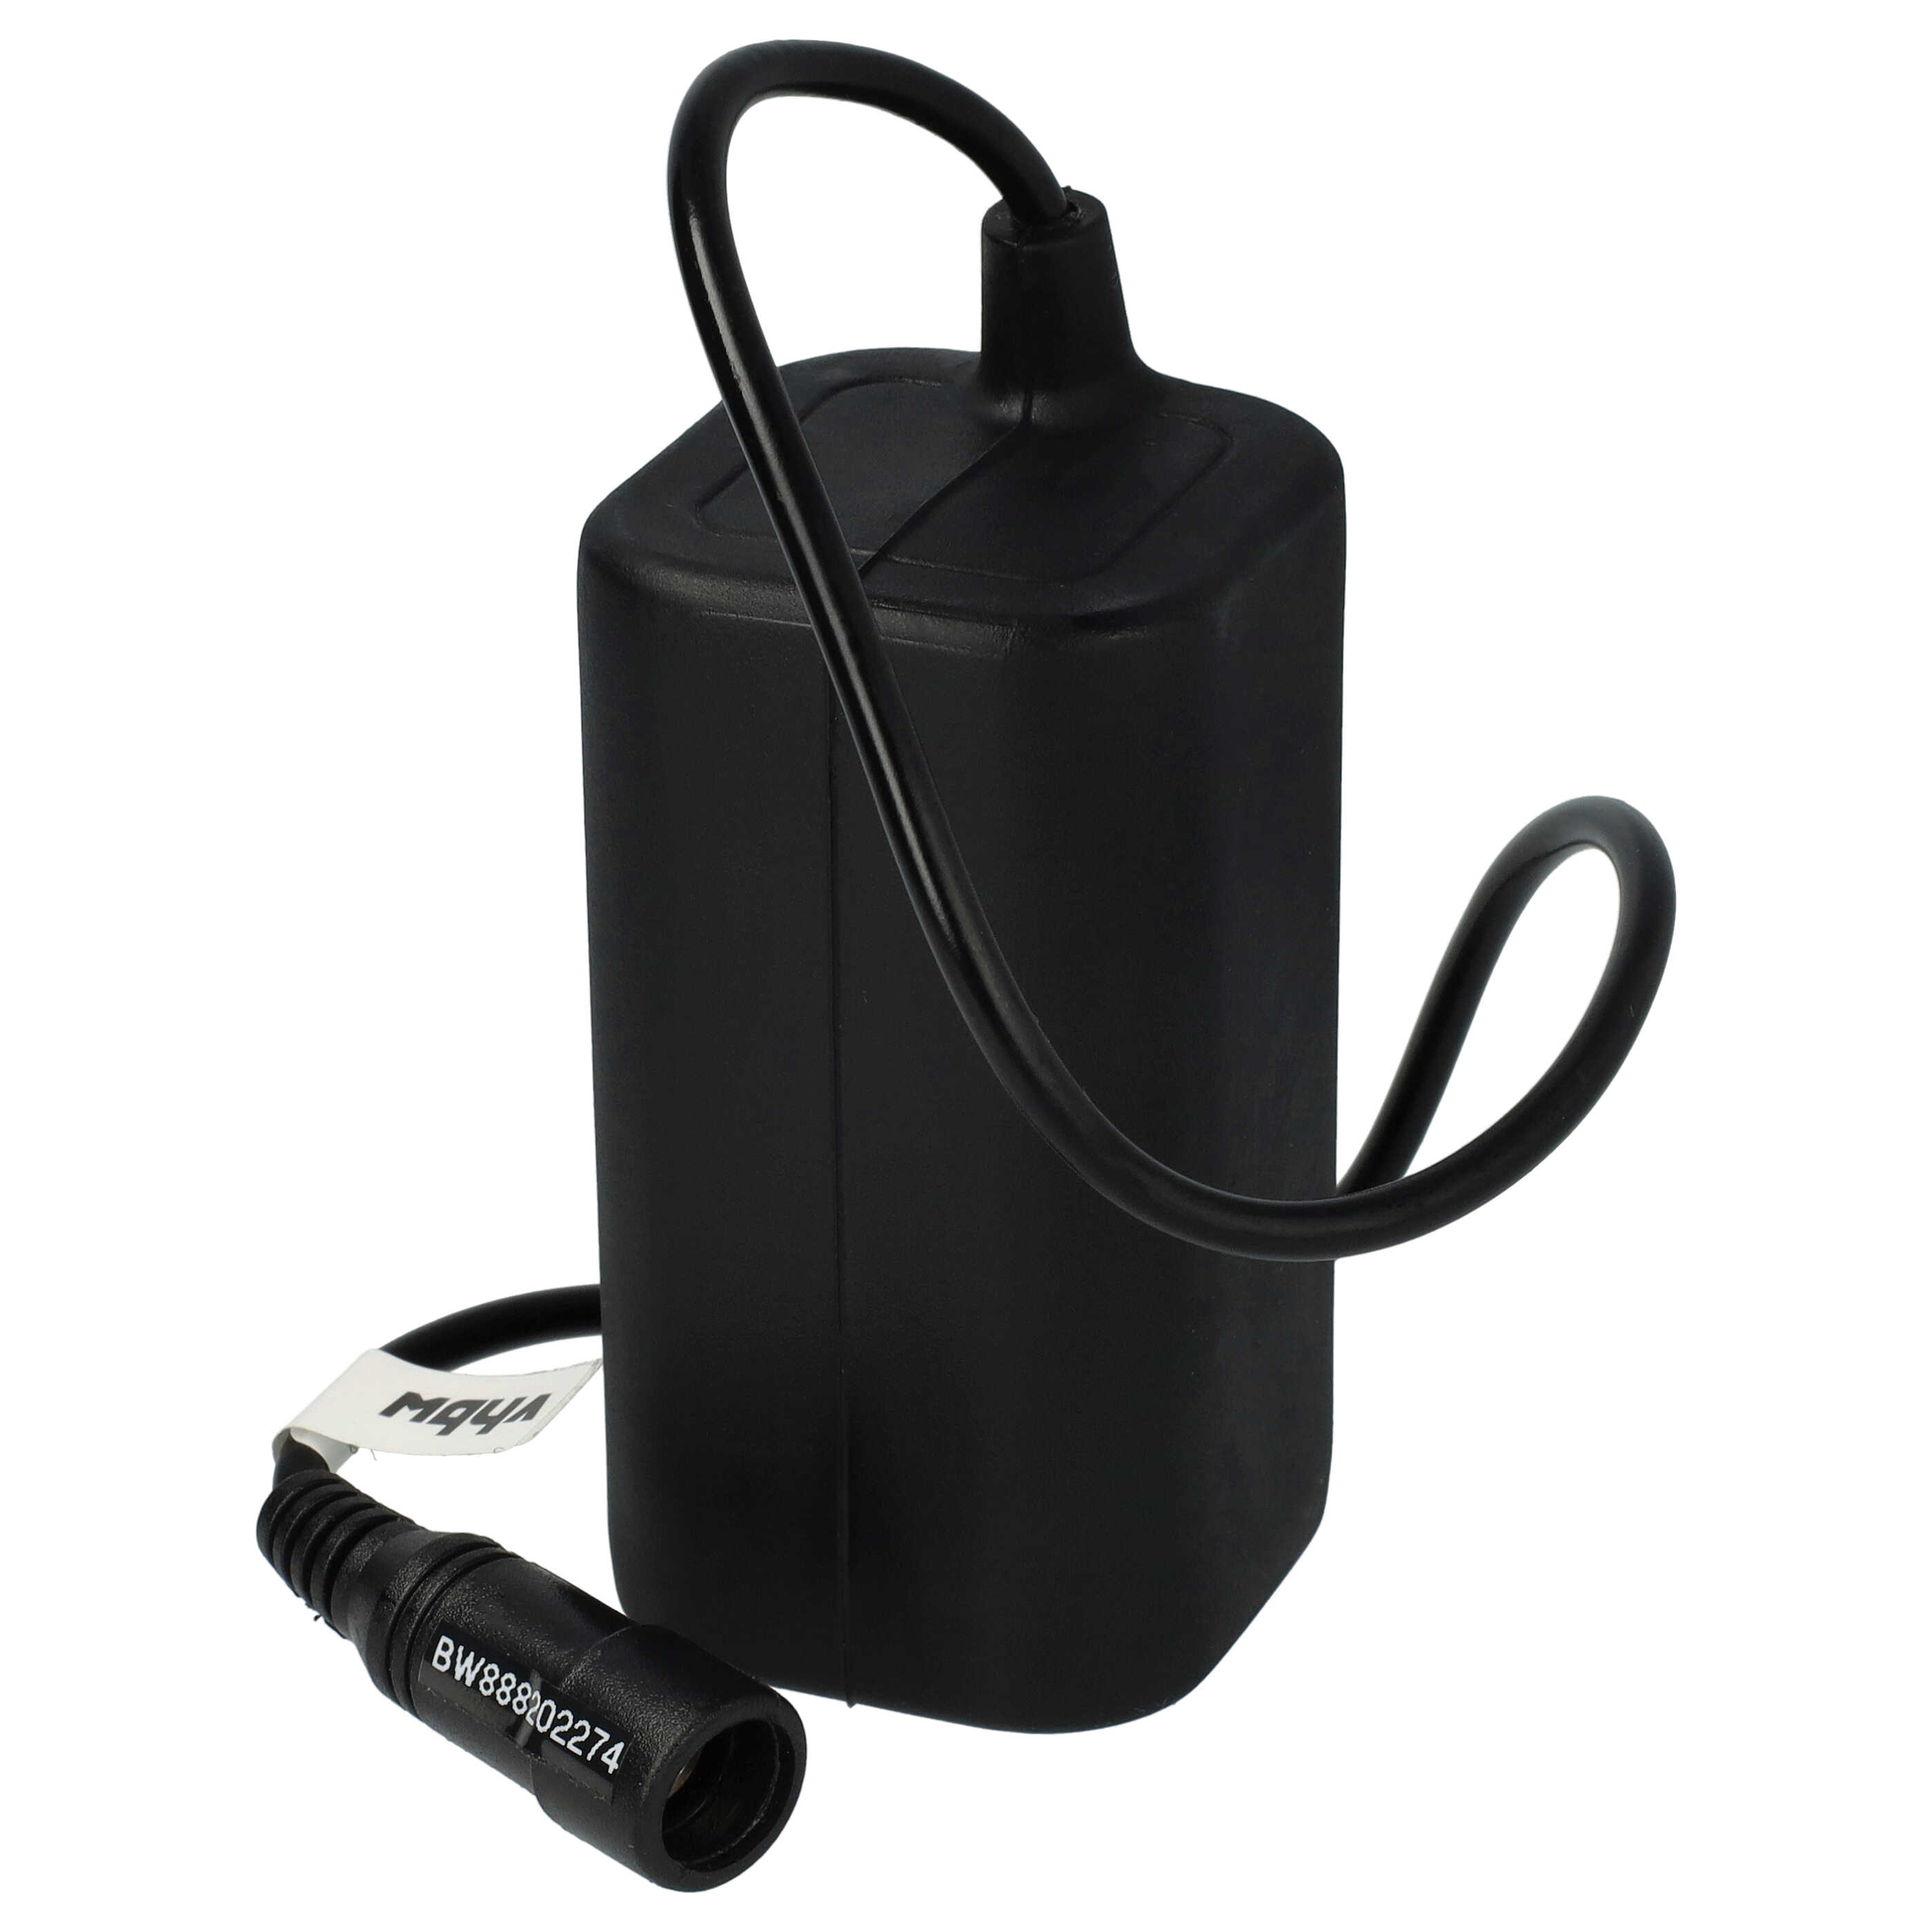 Pacco batteria + caricatore per faretto per biciclette - 5200mAh 8,4V Li-Ion, impermeabile